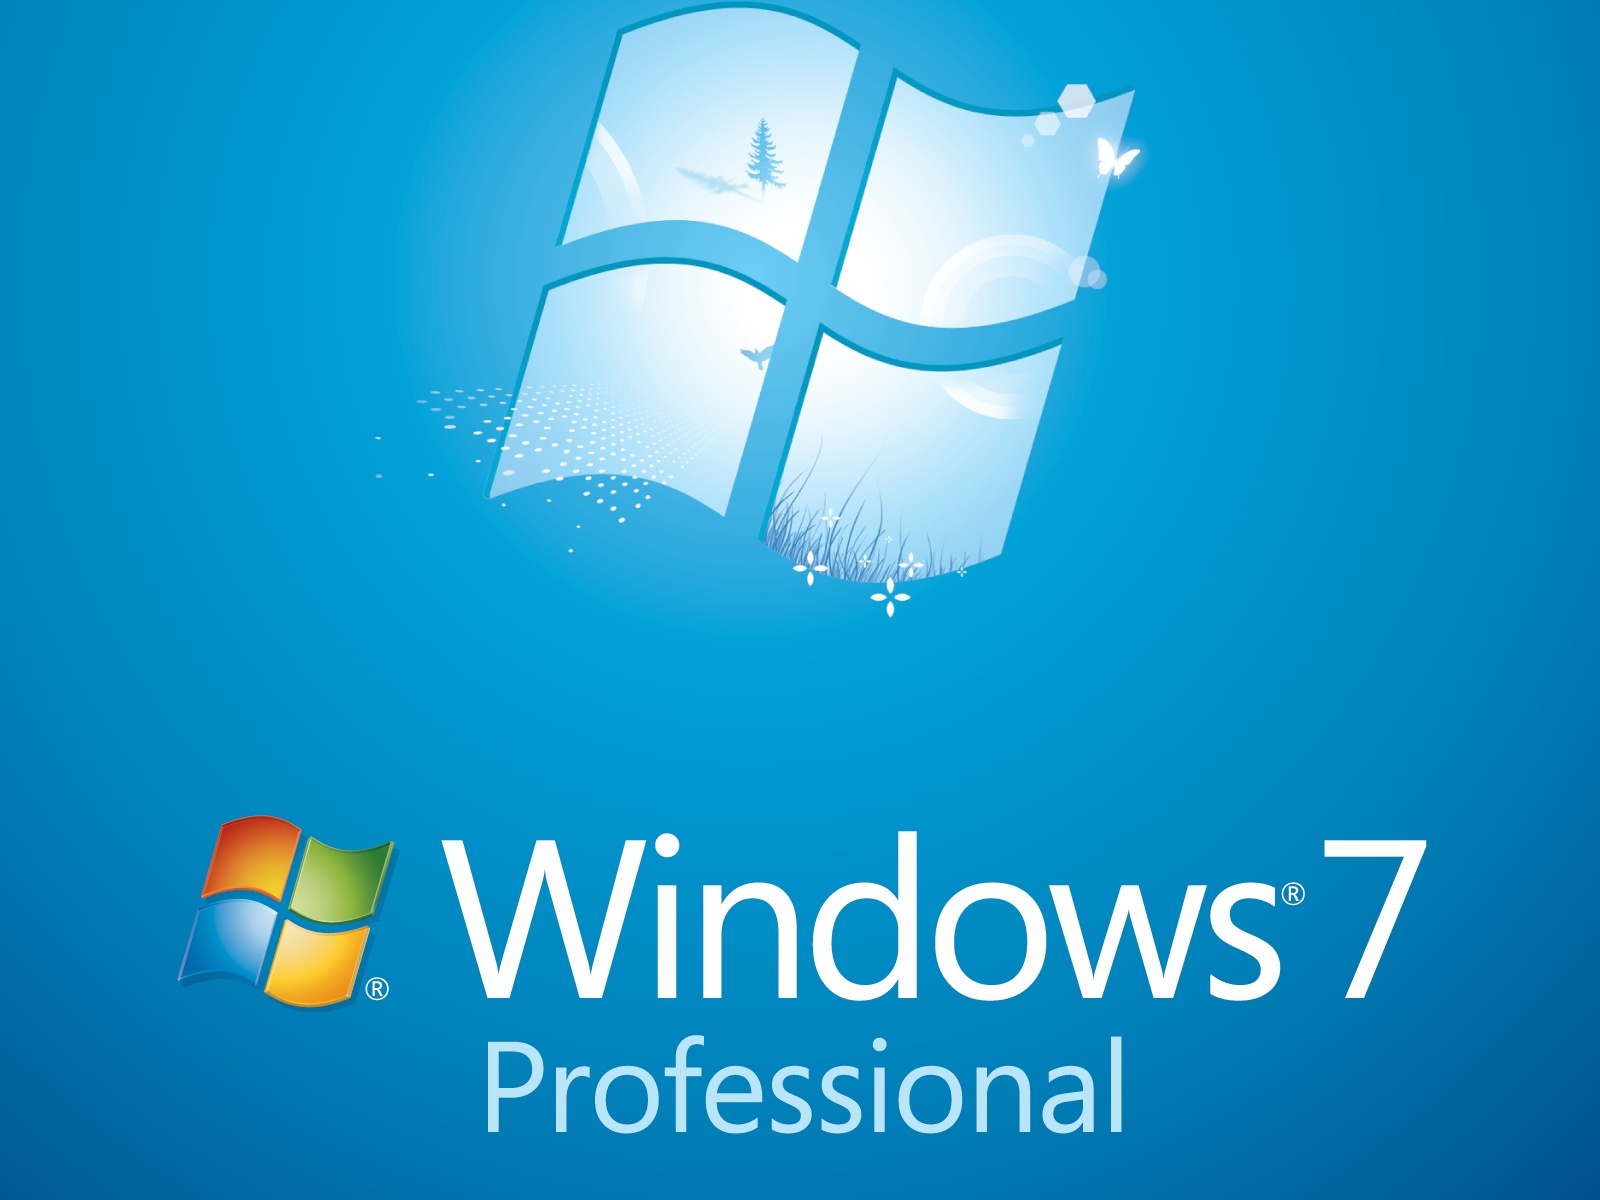 Windows 7 life. Виндовс 7. Виндовс 7 профессиональная. Windows 7 Pro. Windows 7 профессиональная x64.